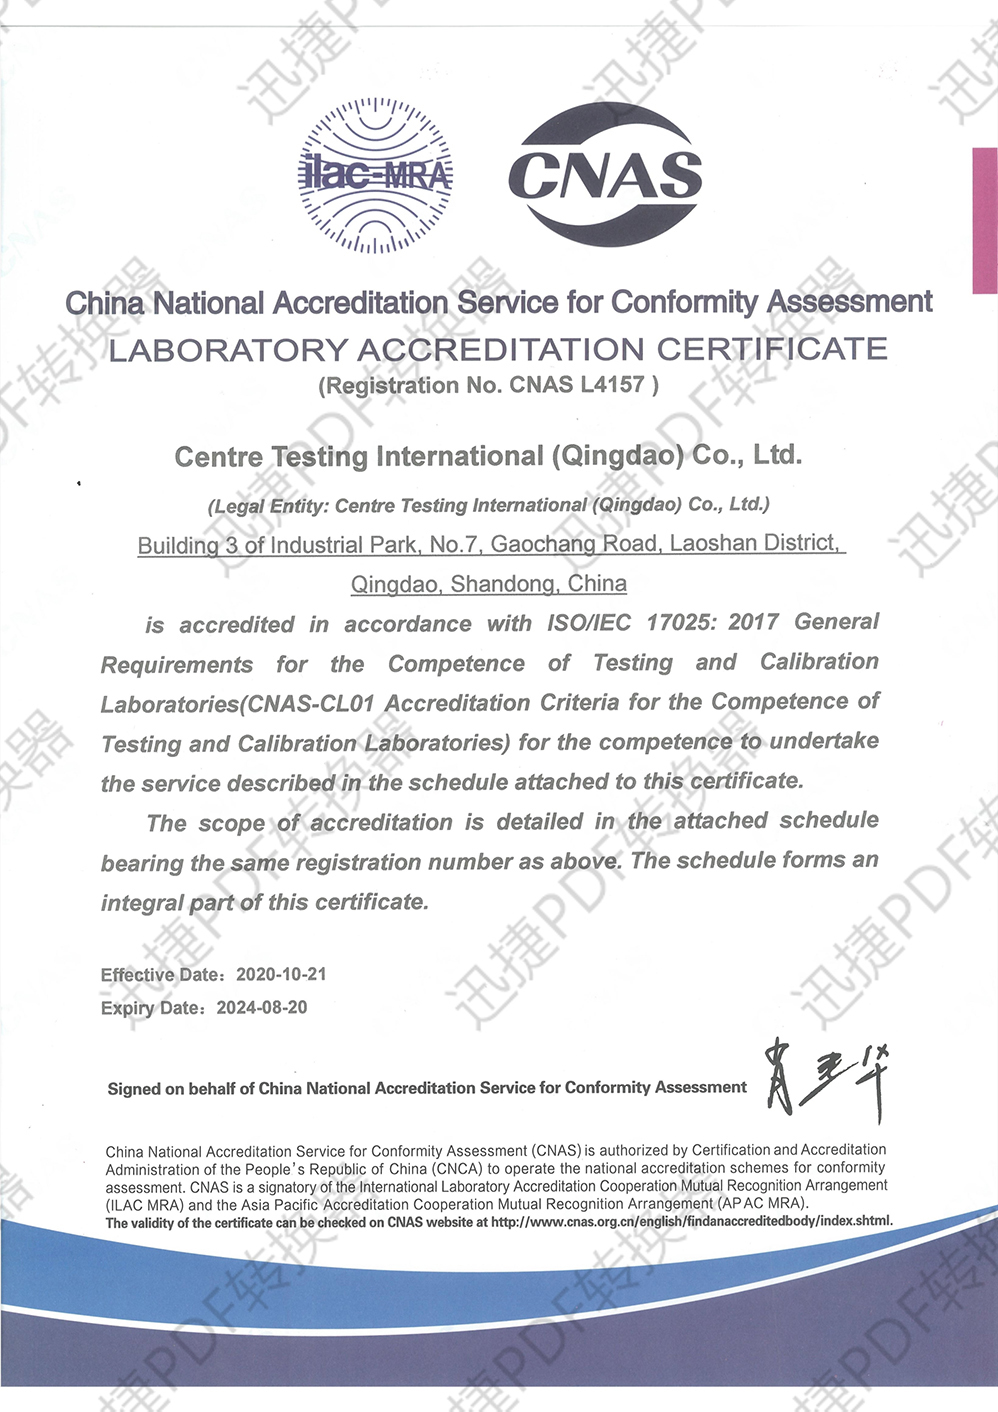 CNAS Certificate-Qingdao ISO/IEC 17025:2017